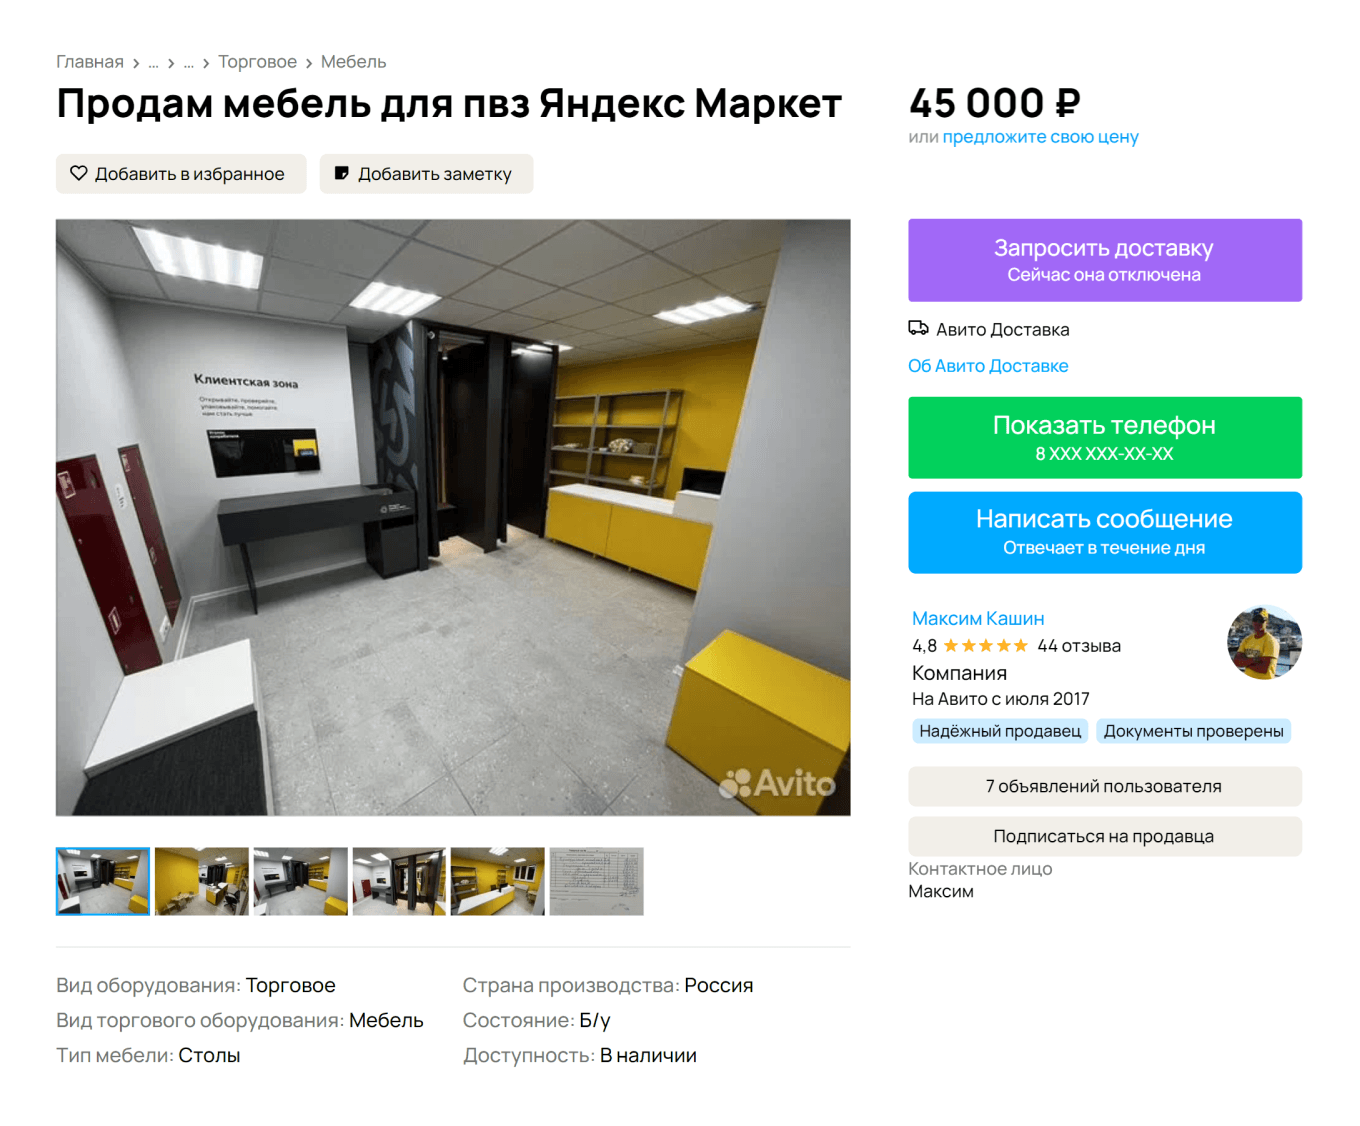 Продажа мебели для ПВЗ Яндекс Маркета на Авито 